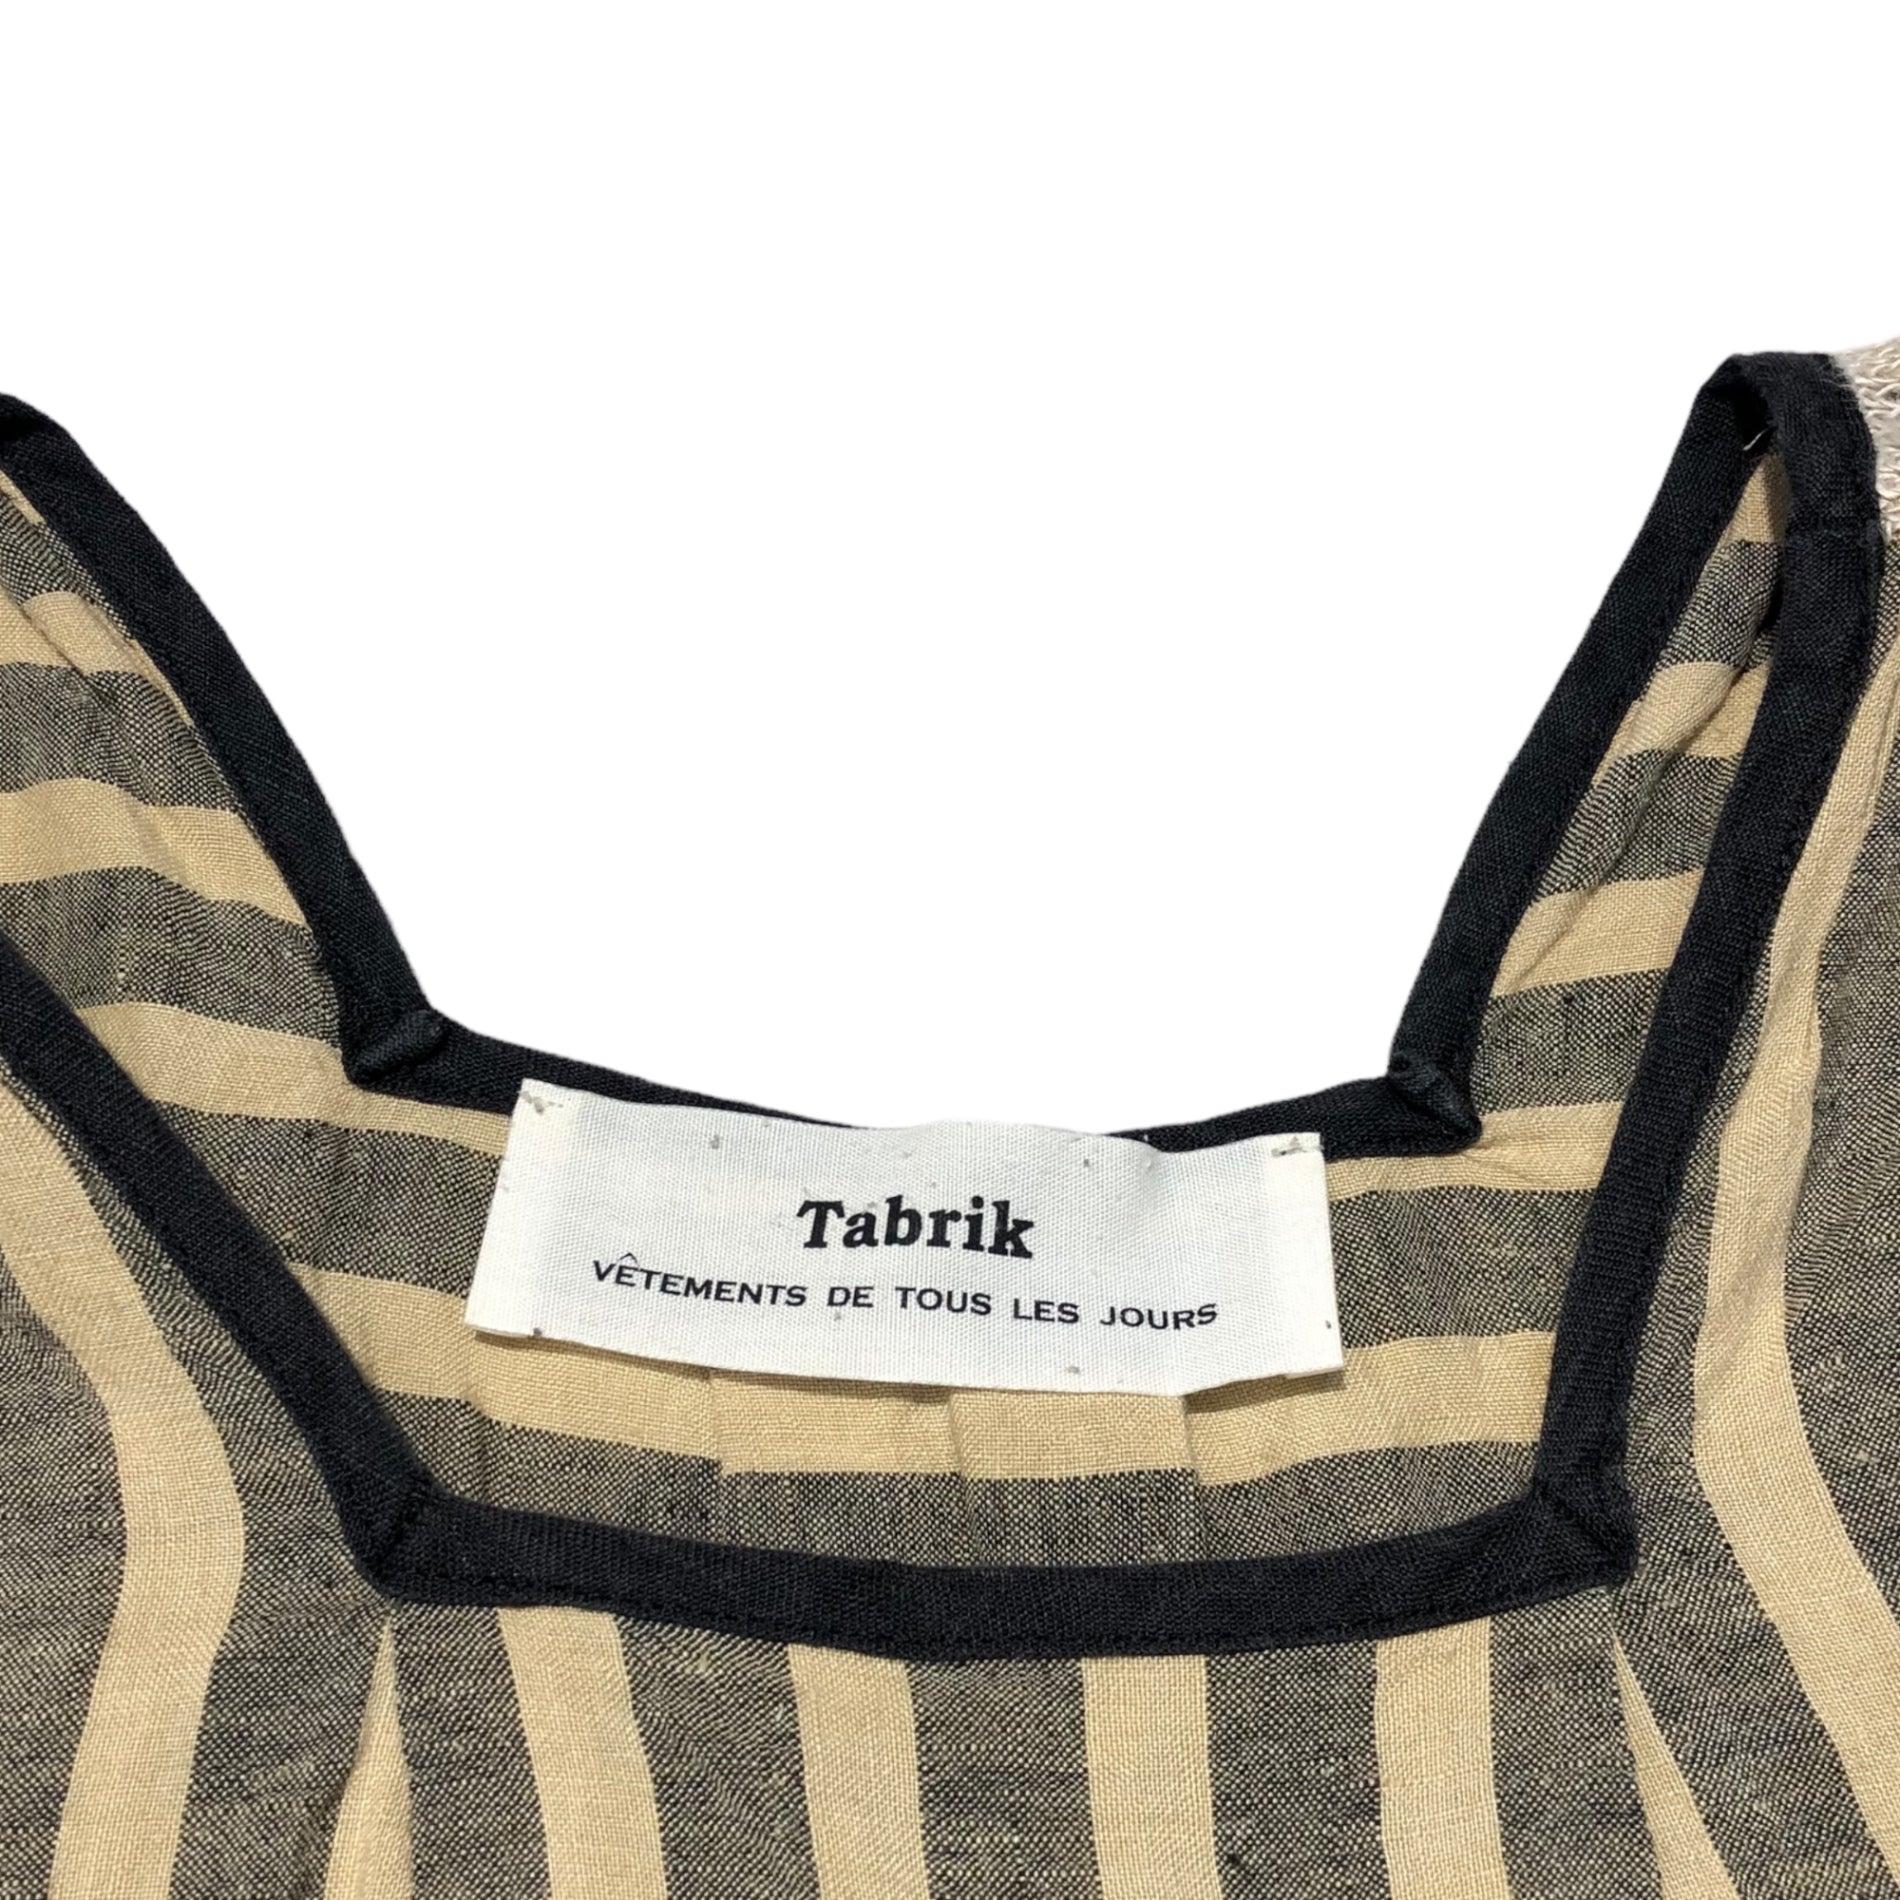 Tabrik(タブリク) sleeveless striped linen blouse スリーブレス ストライプ リネン ブラウス FREE ベージュ×ブラック